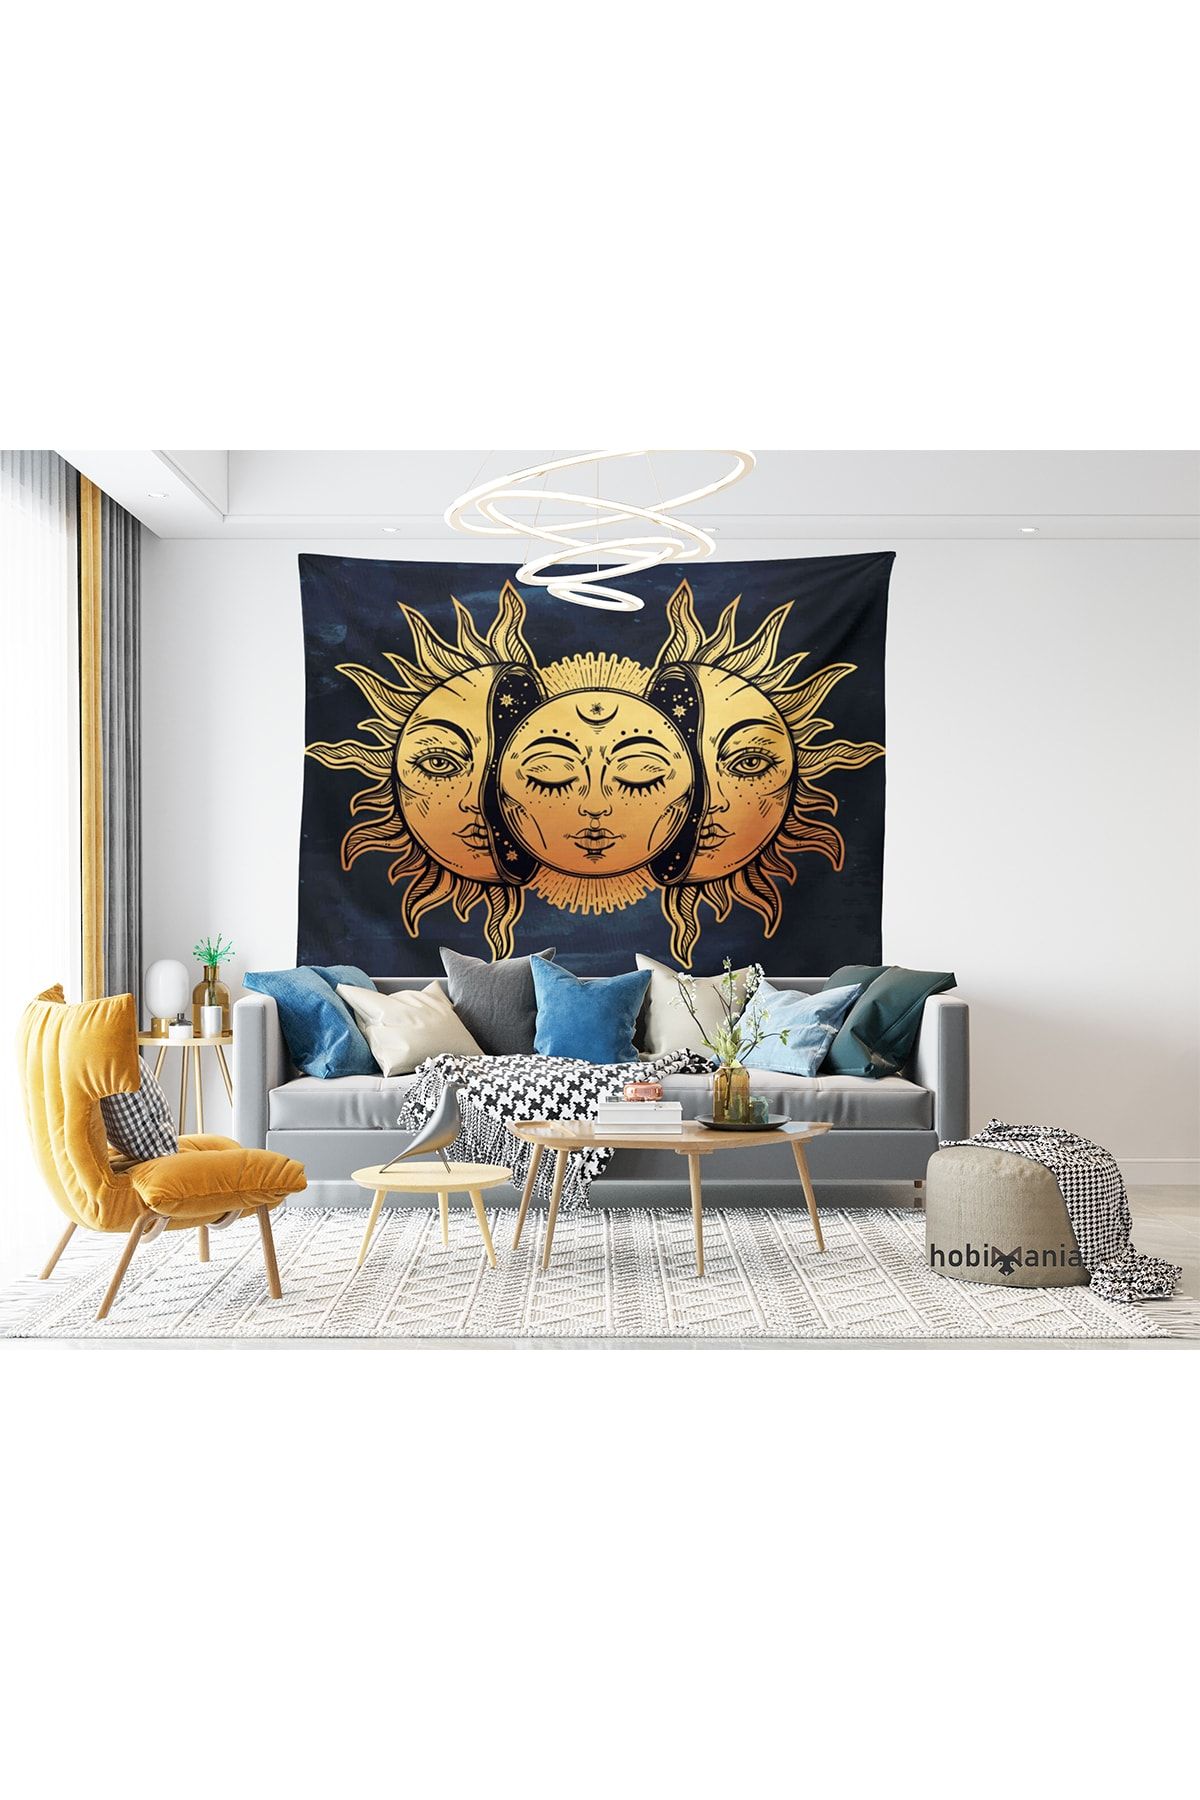 Hobimania Güneş Ve Ay Güneşin Yüzü Lacivert Duvar Örtüsü Tapestry 230x140 Cm Duvar Dekorasyon Moda